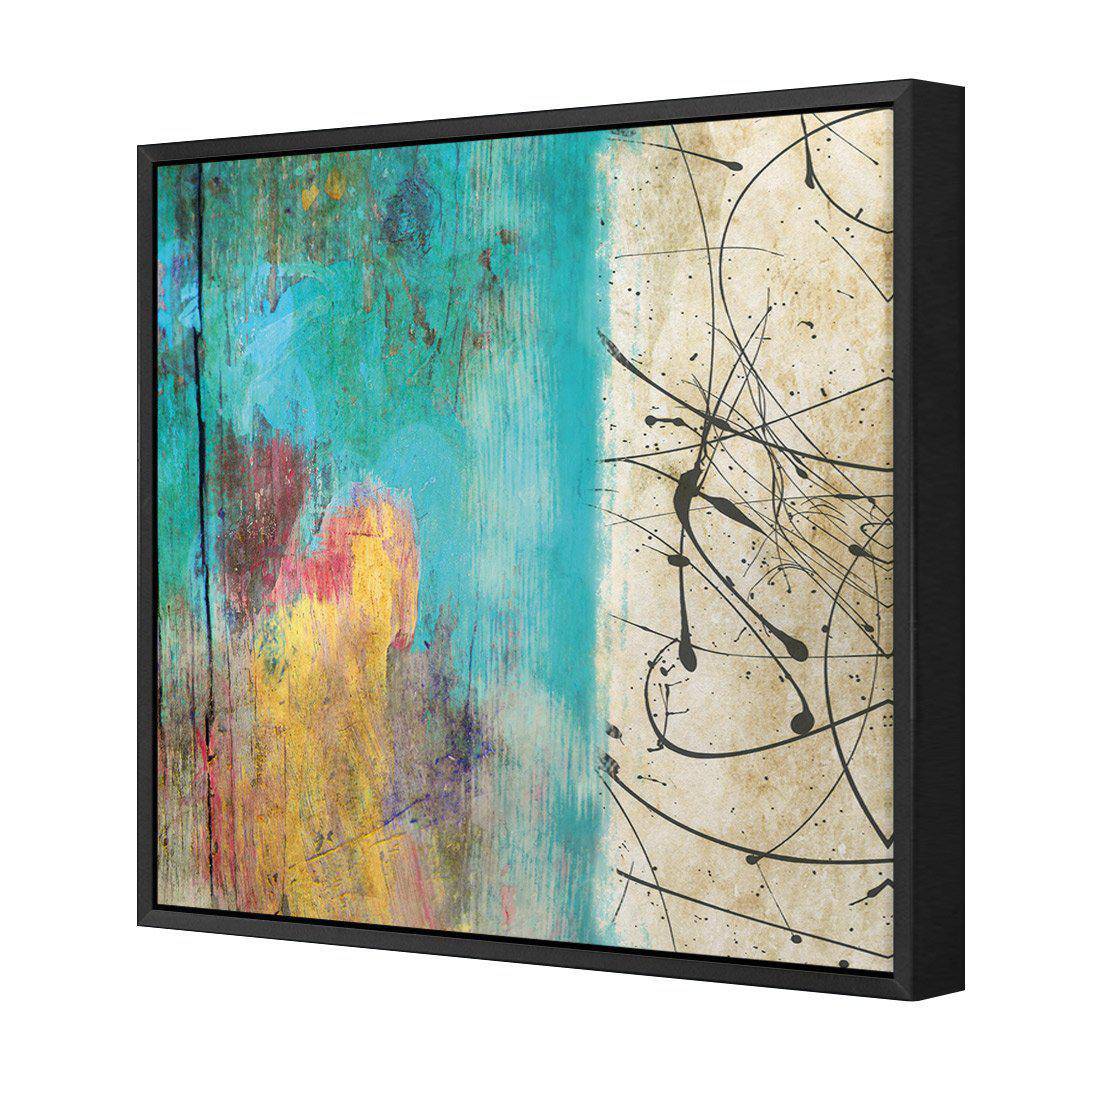 Painted Grunge Splatter Canvas Art-Canvas-Wall Art Designs-30x30cm-Canvas - Black Frame-Wall Art Designs